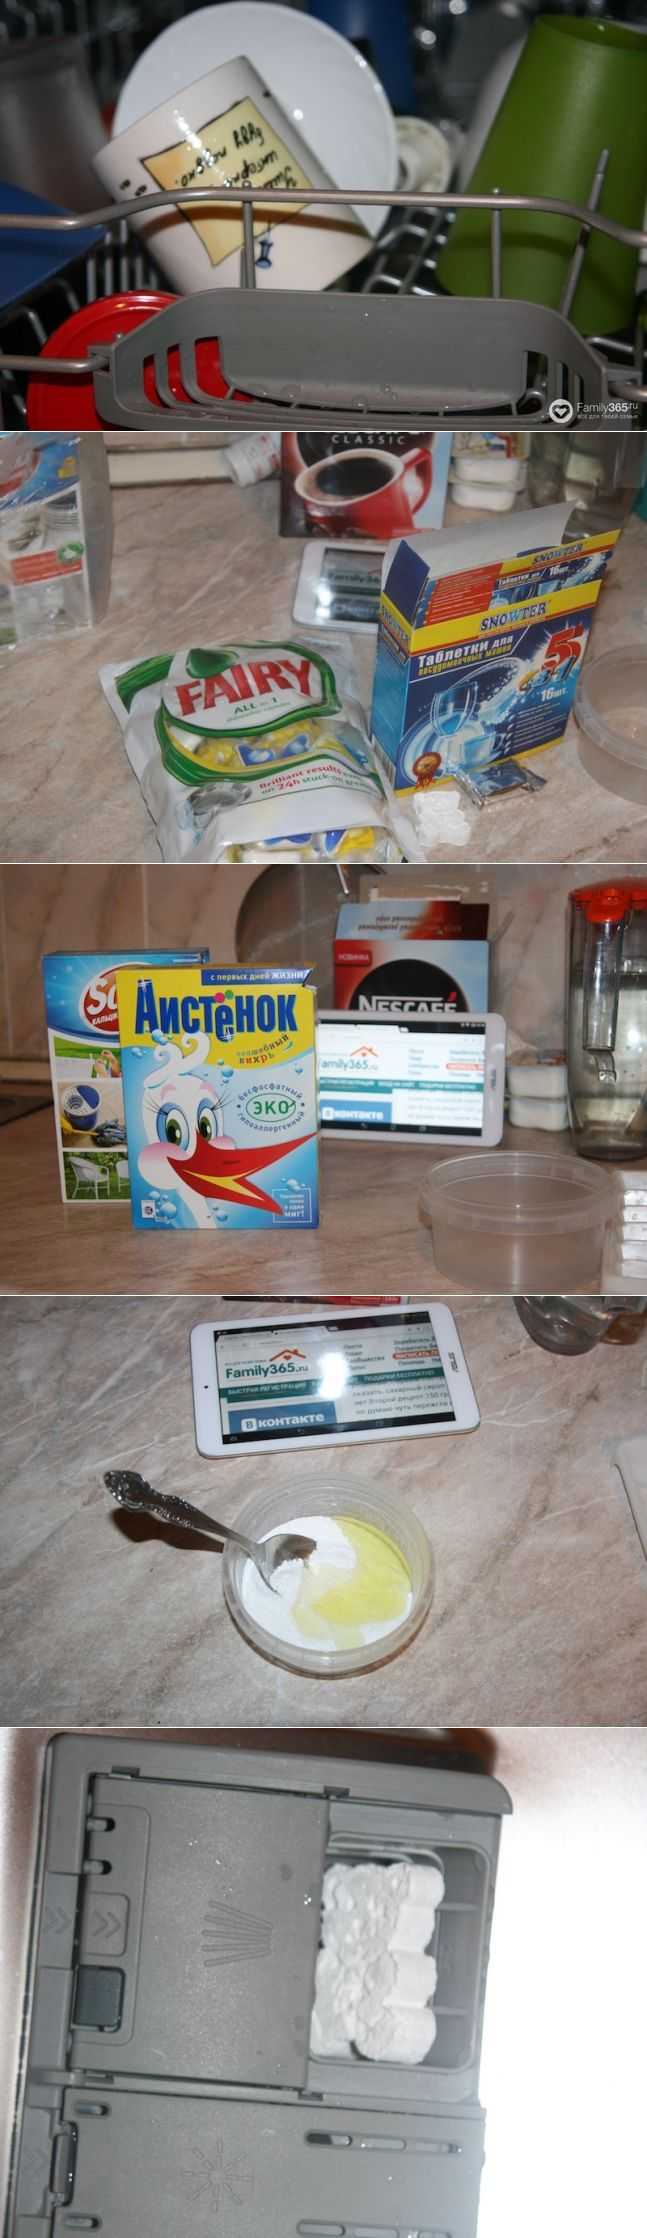 Отзывы о таблетках для посудомоек - особенности использования, разновидности таблеток